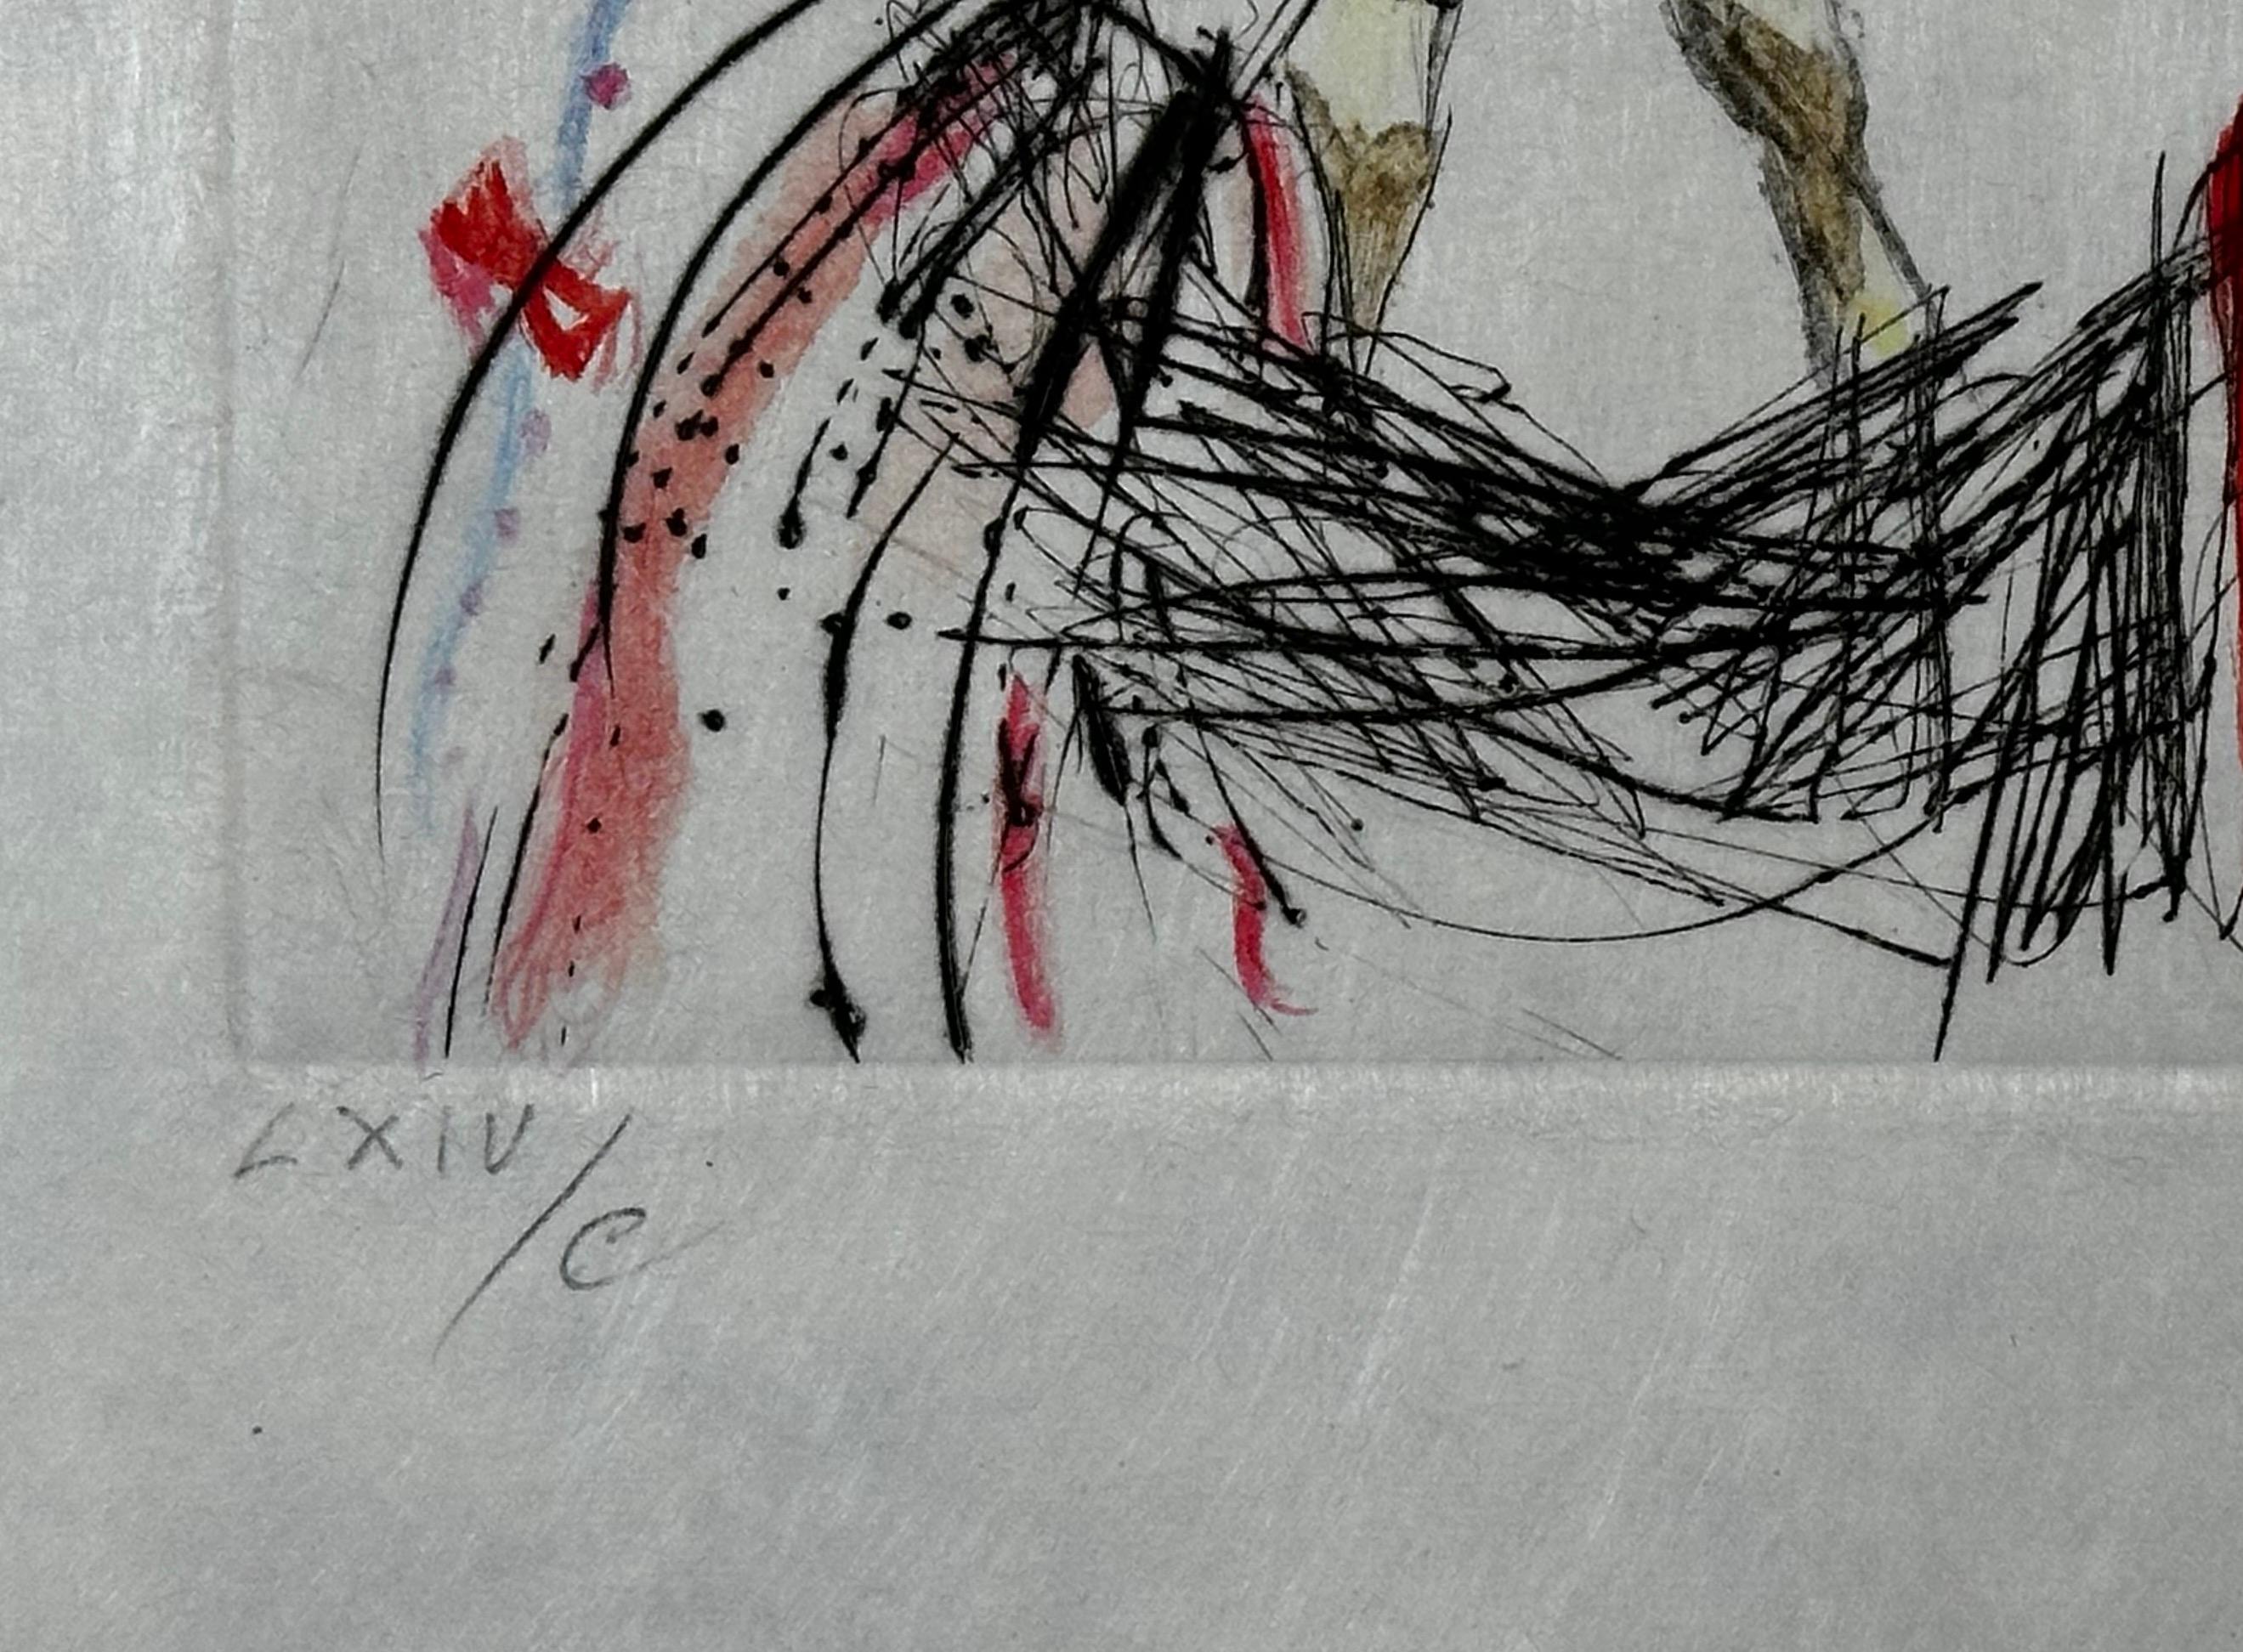 
ARTISTE : Salvador Dali

TITRE : Tauramachie Surrealiste La girafe en feu

MOYEN : Gravure

SIGNÉ : Signé à la main 

NUMÉRO D'ÉDITION : A.I.C.

MESURES : 20